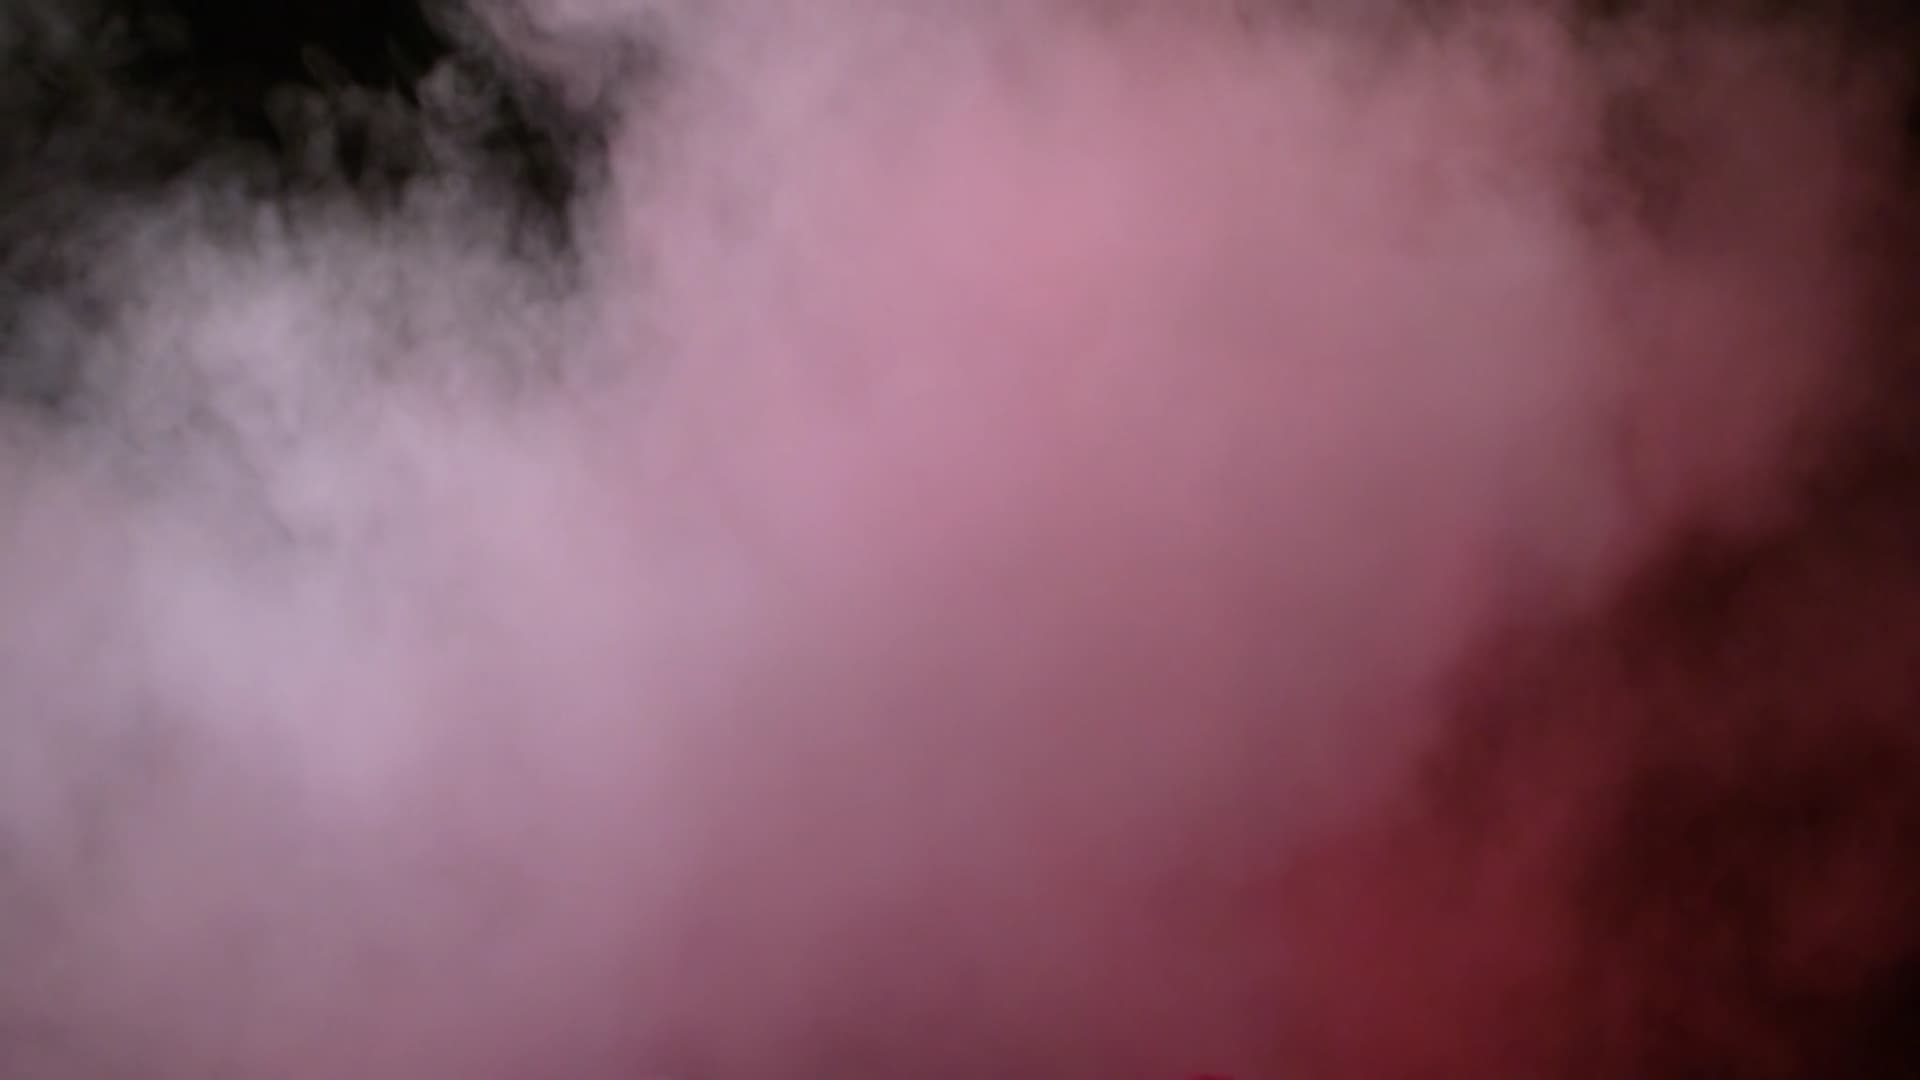 烟雾缭绕状态的红色粉末